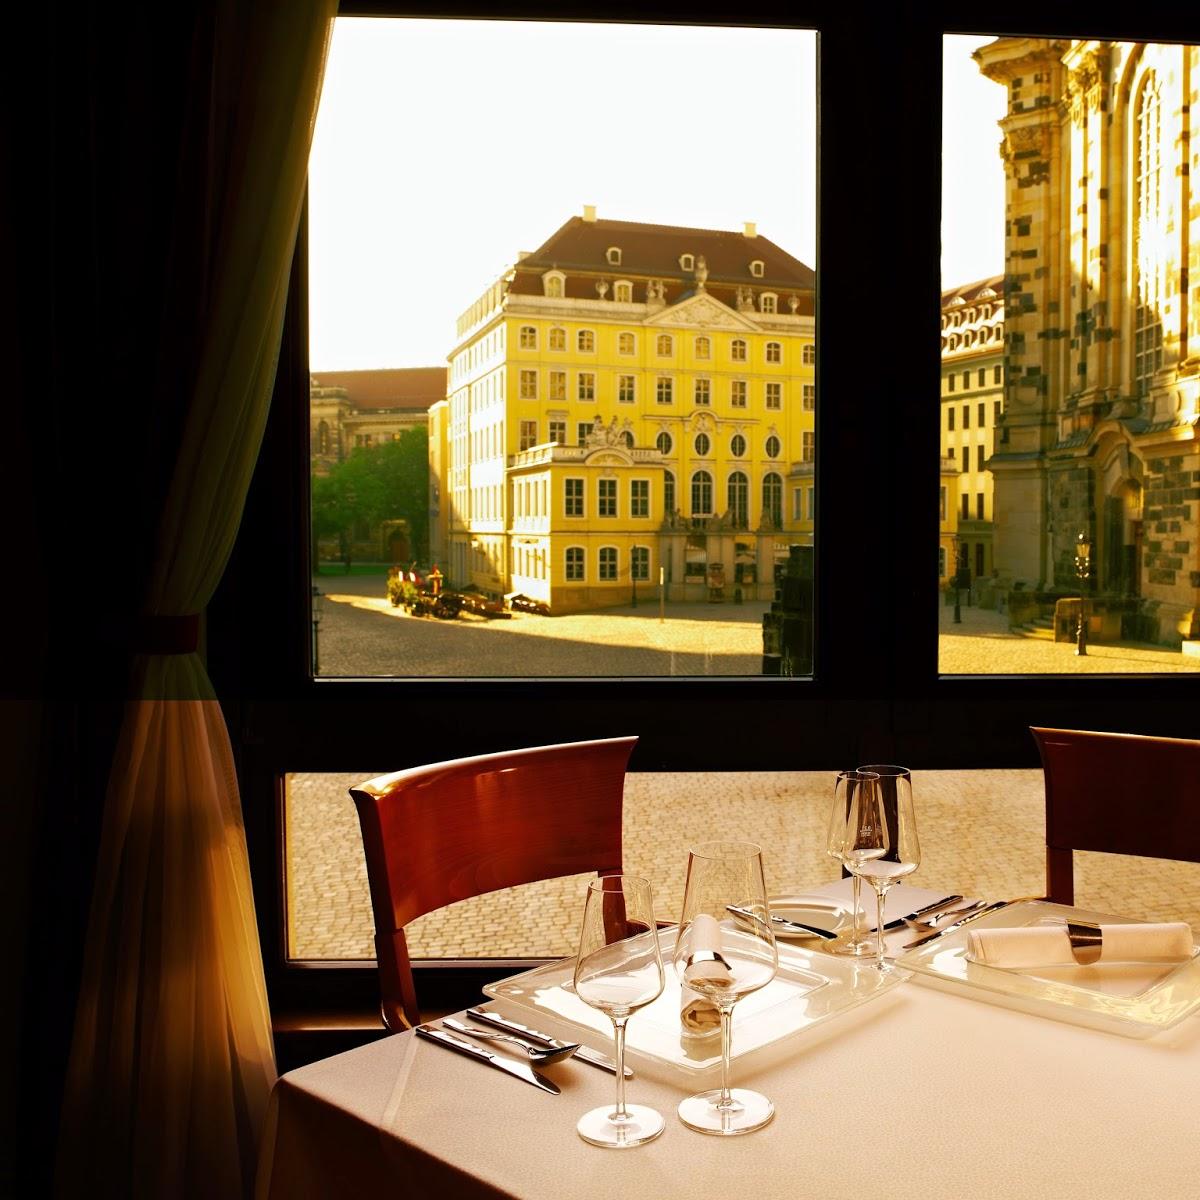 Restaurant "Restaurant Rossini" in Dresden